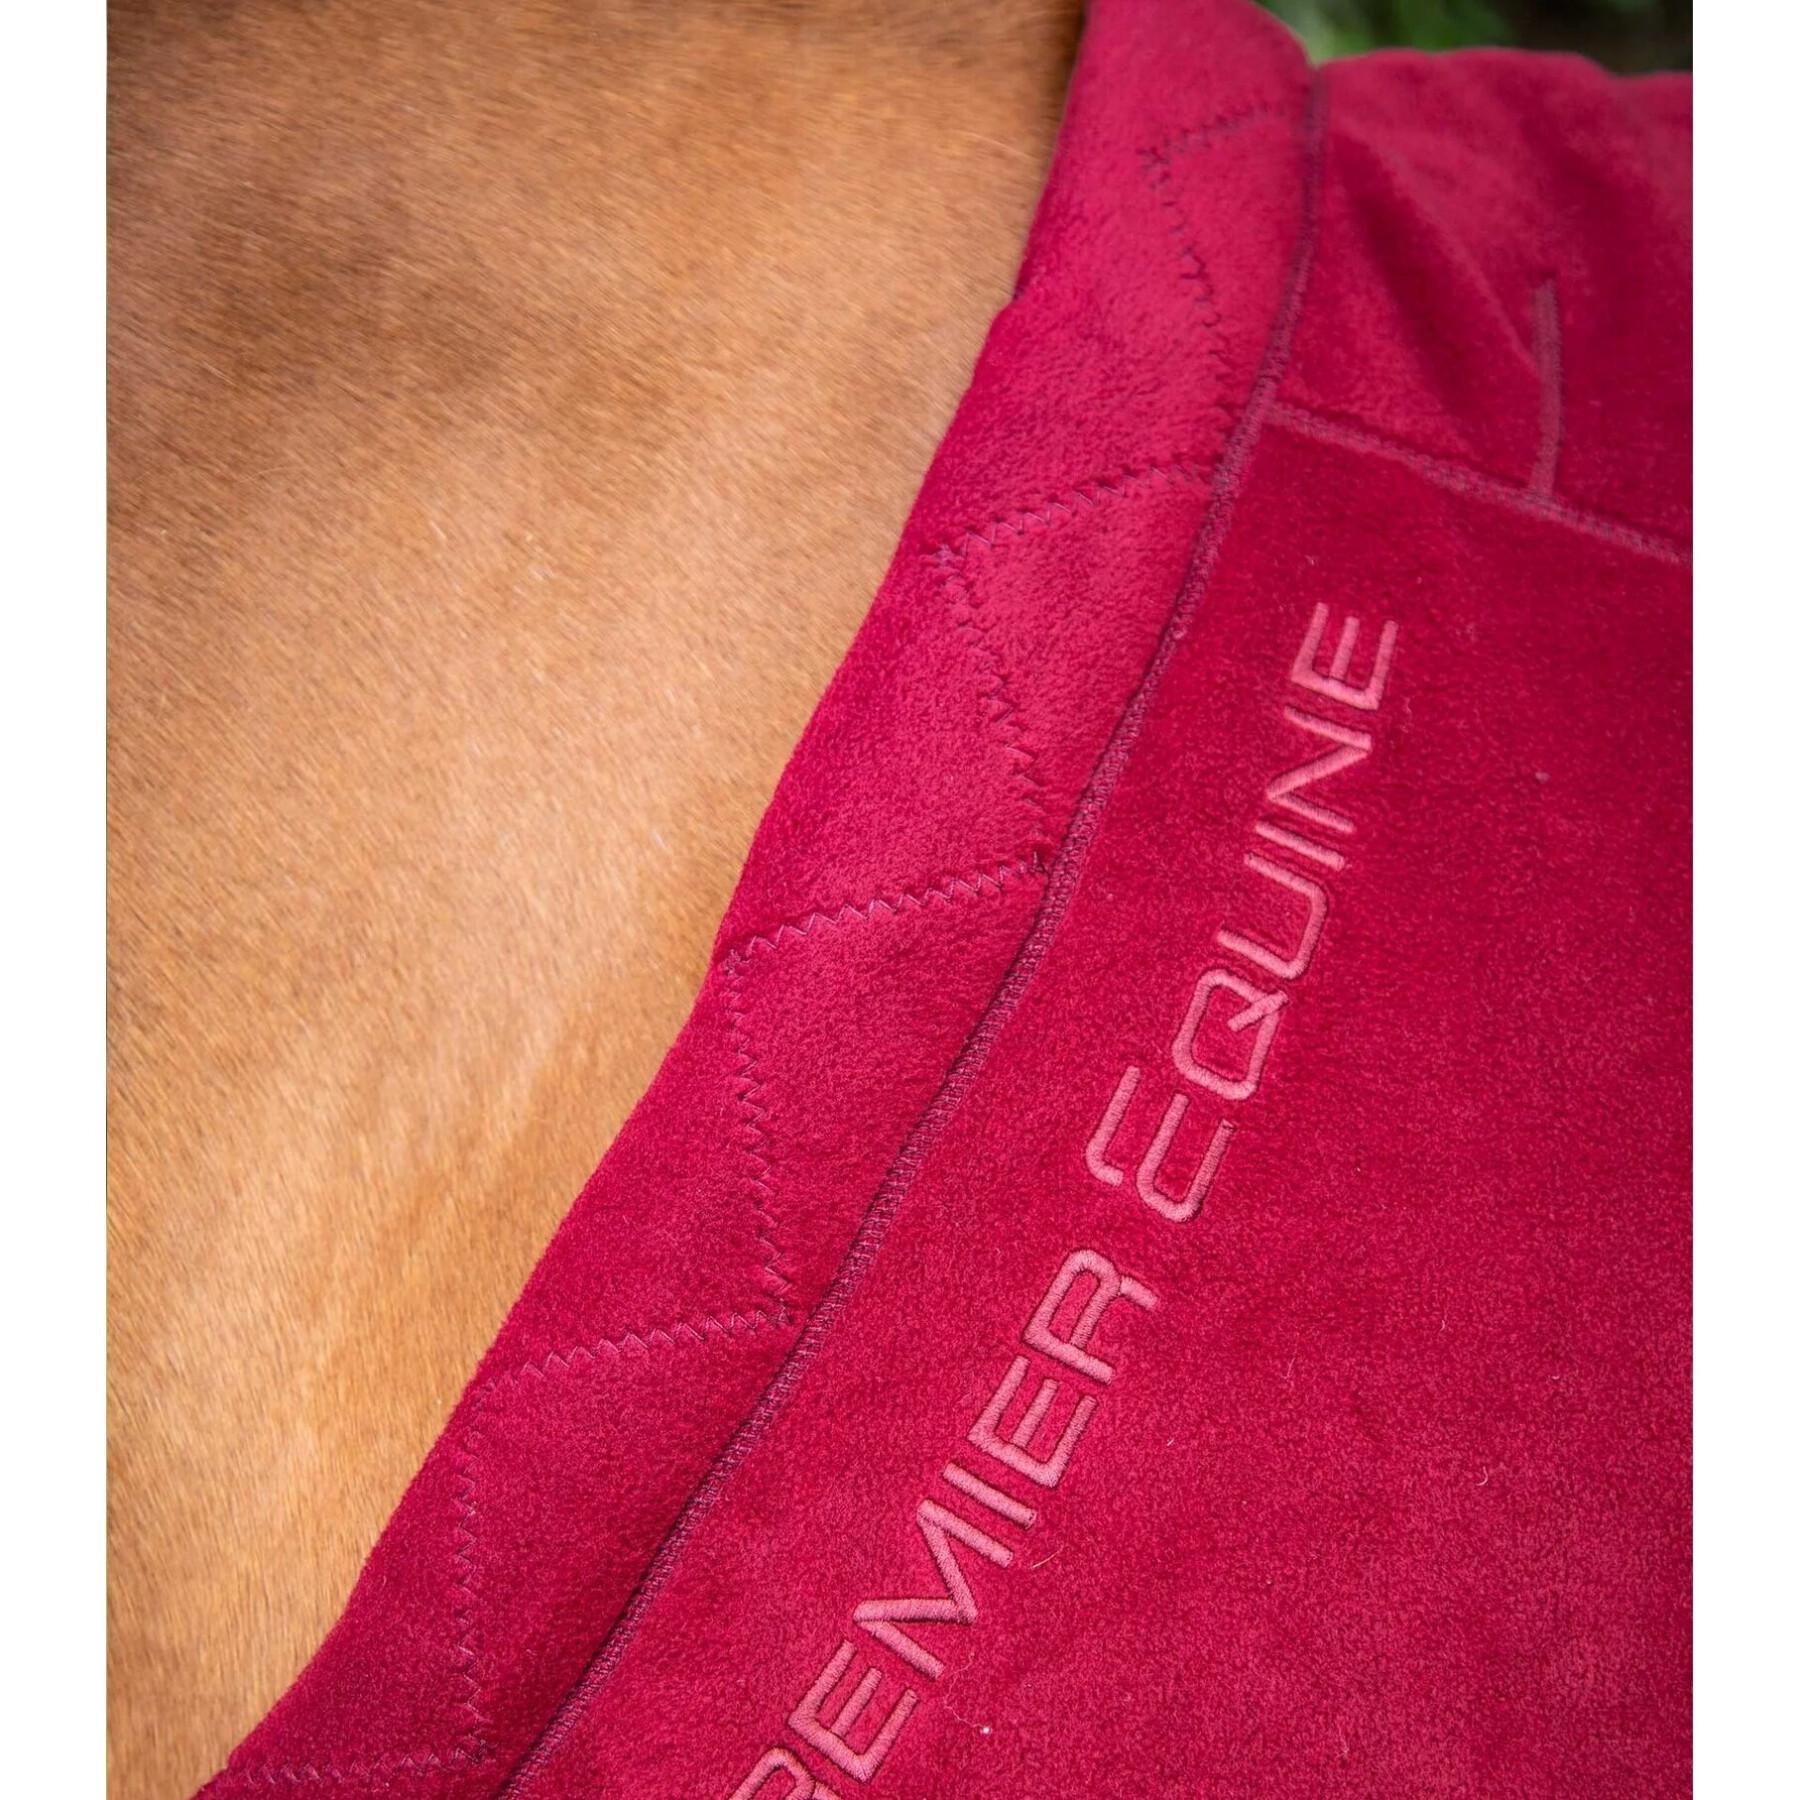 Trocknende Fleecedecke für Pferde Premier Equine Buster Continental 280g